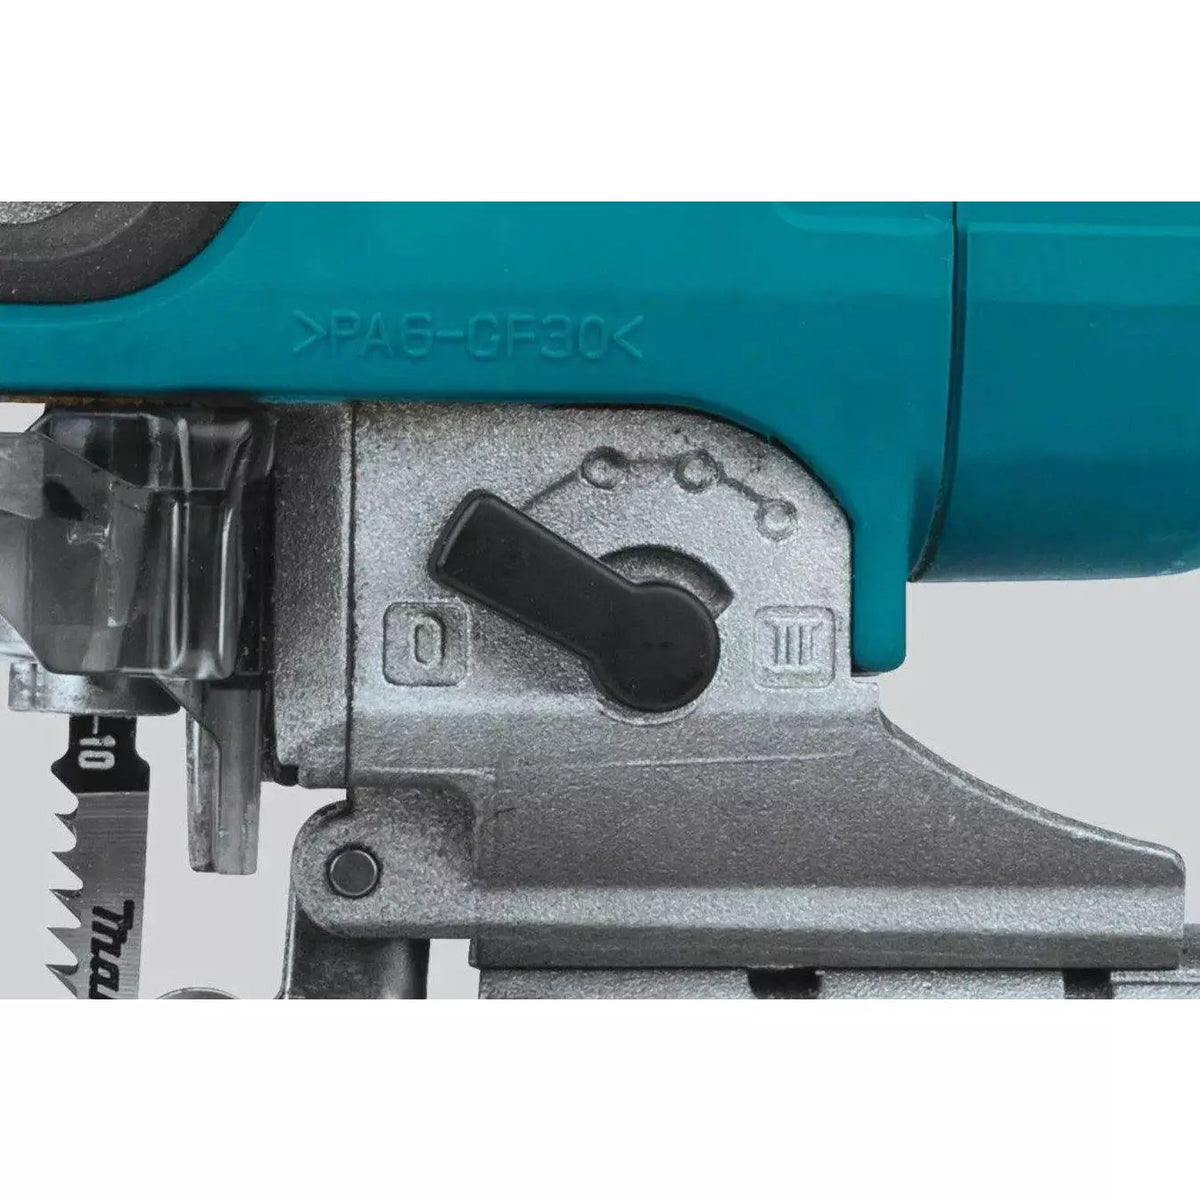 18V 26mm LXT Top handle jigsaw cutter 0-2600sp